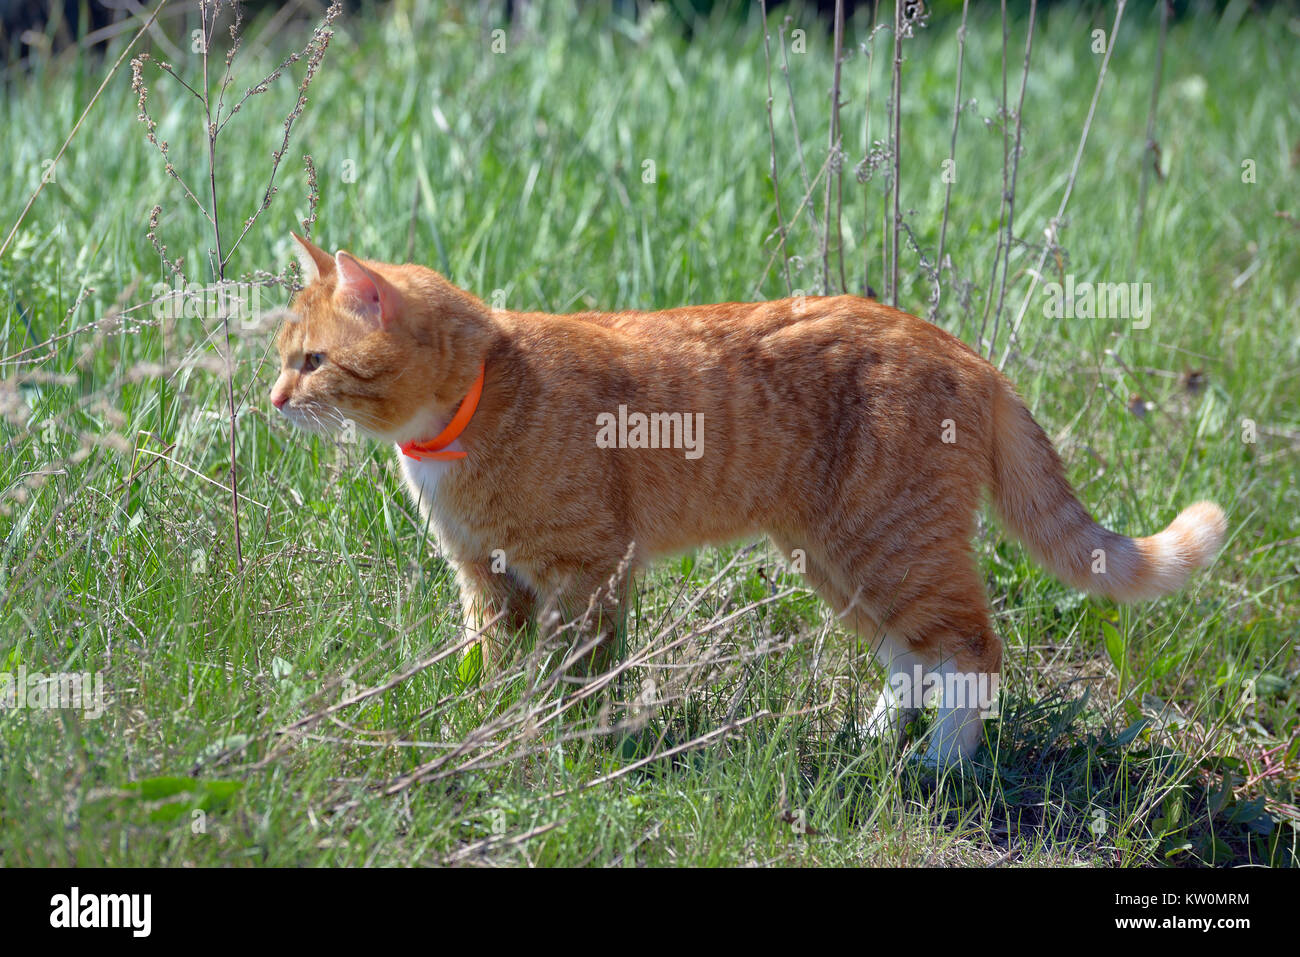 Im Gras rote Katze in einem orange Halsband Stockfoto